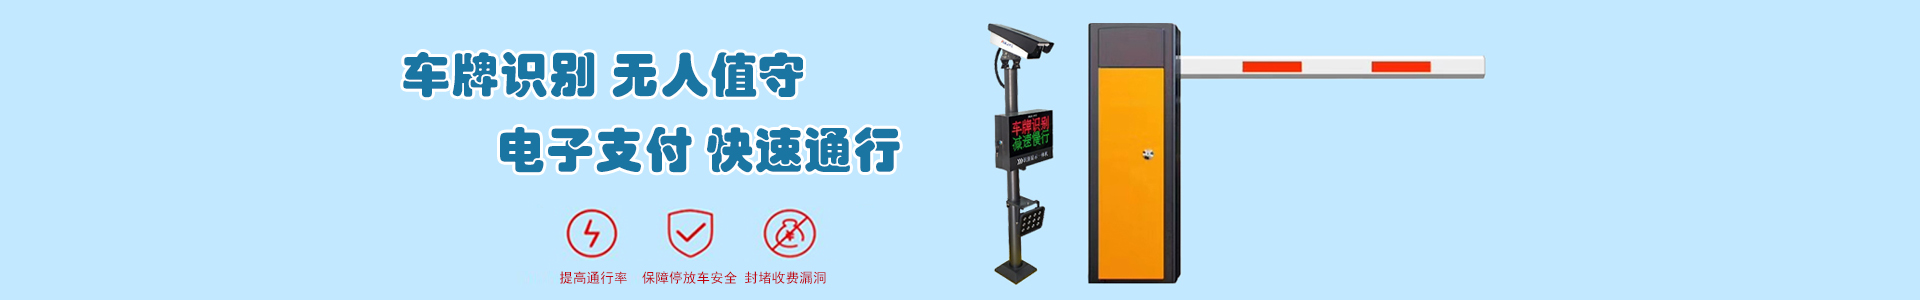 上海电信长市一路-成功案例-上海帆蓝智能科技有限公司-车辆车牌识别|监控摄像头|道闸|小区门禁|人脸识别|伸缩门|